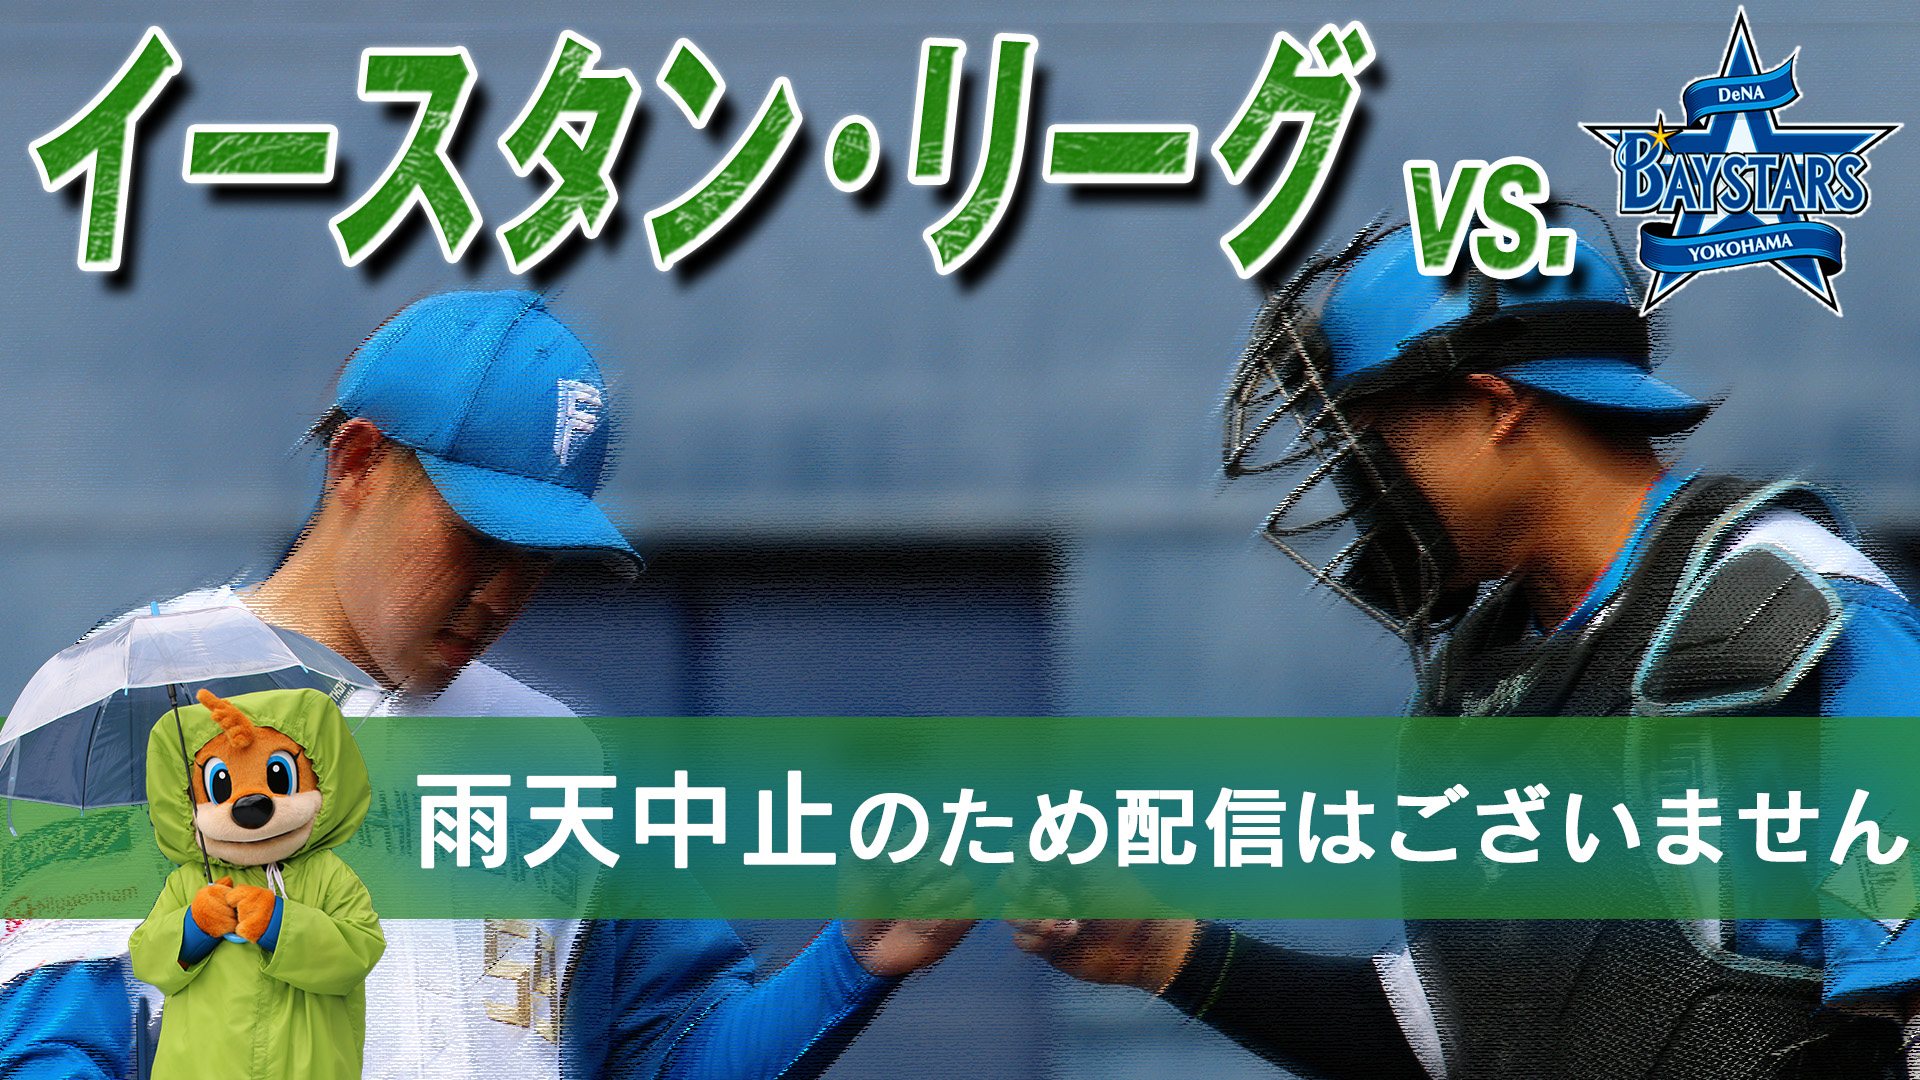 4月24日 (水)  イースタン・リーグ vs横浜DeNA